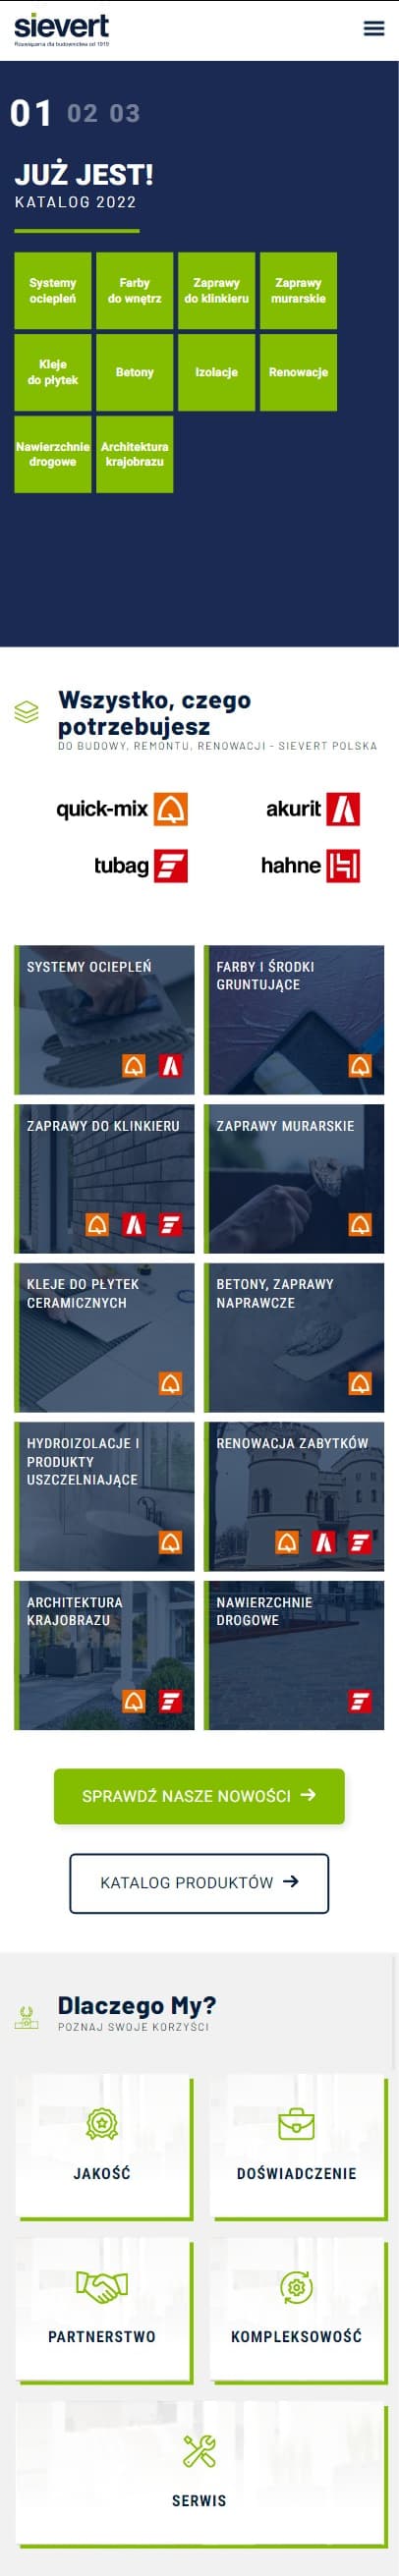 Realizacja agencji marketingowej RekinySukcesu.pl